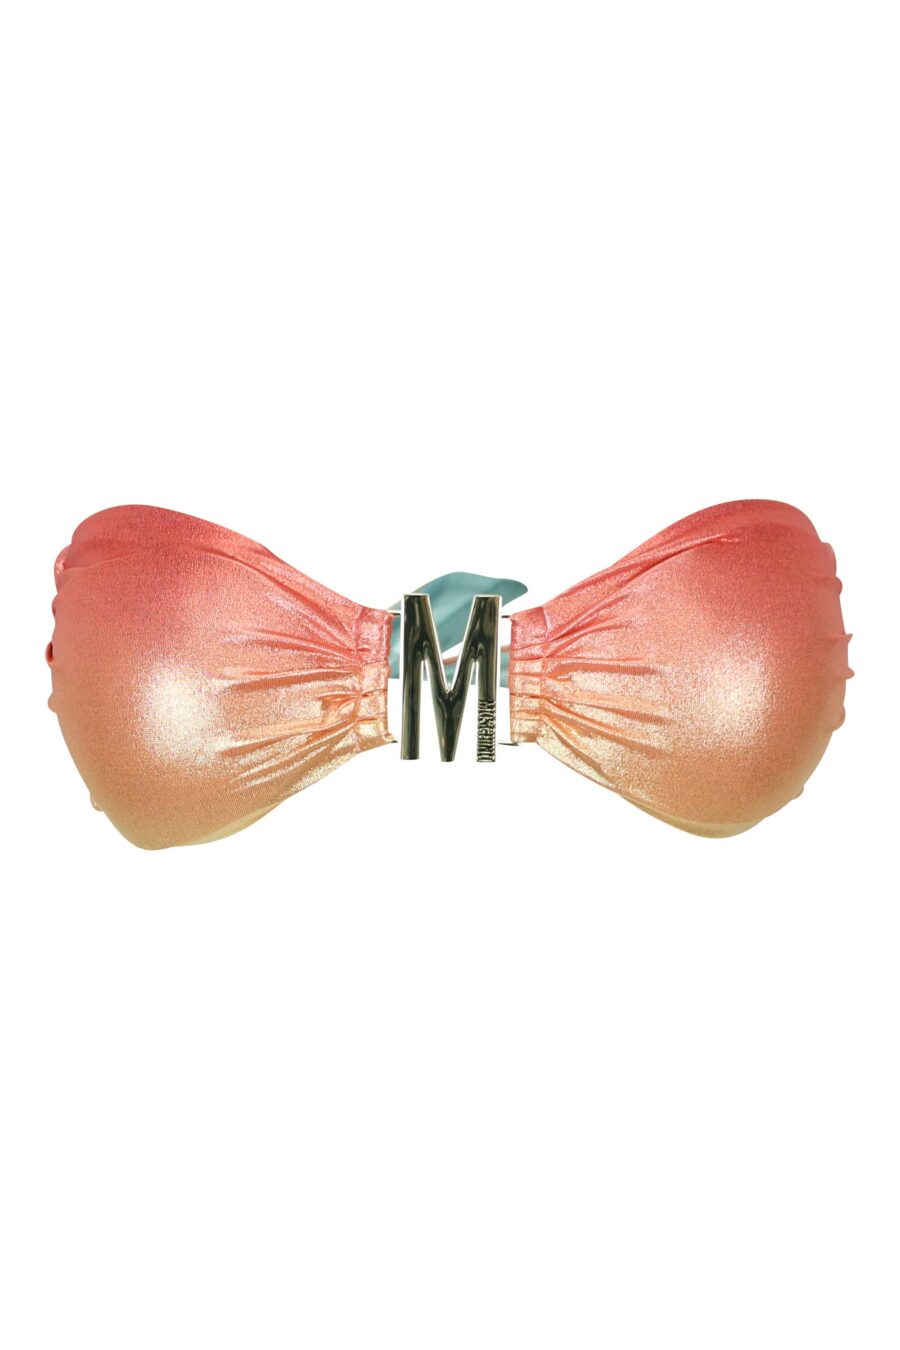 Multicoloured bikini top with gold lettering "m" logo - 667113644493